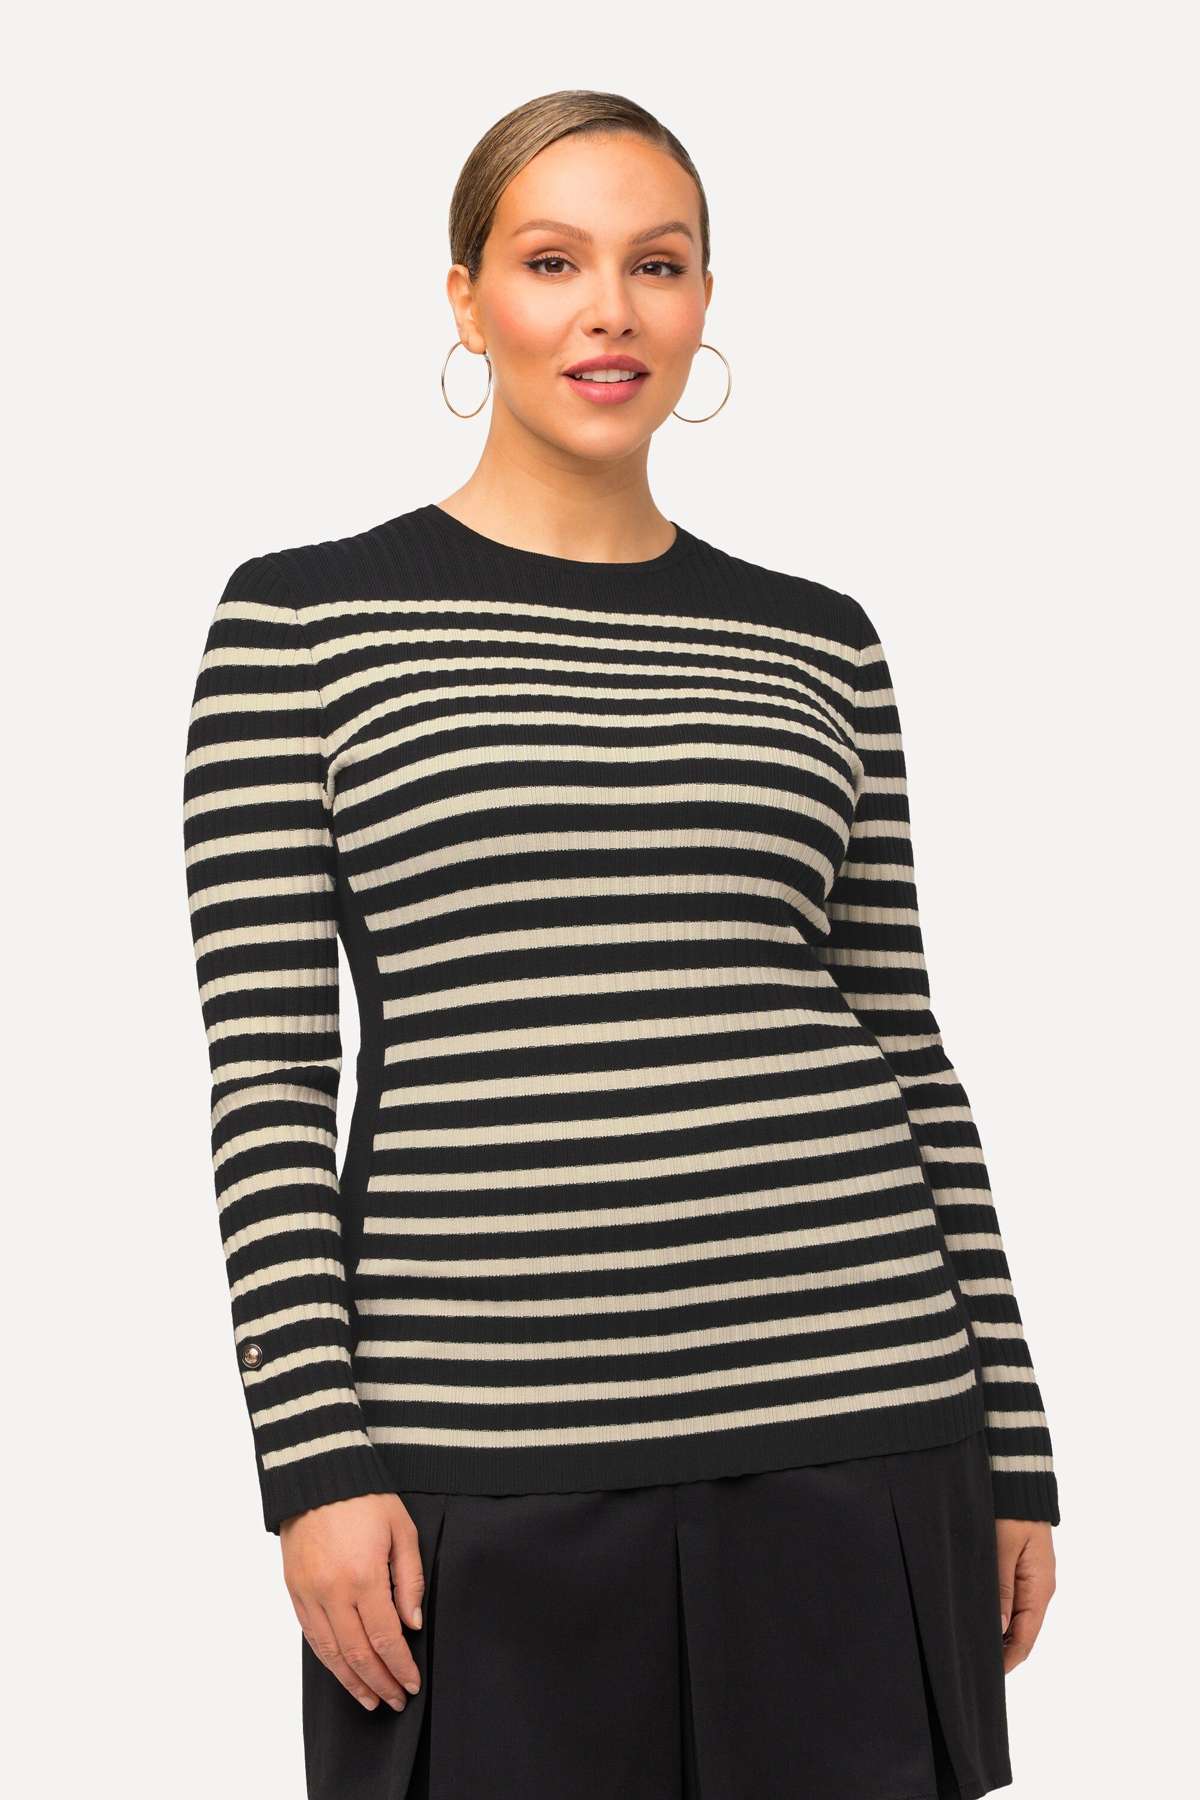 Вязаный свитер-пуловер в бретонскую полоску, узкий, с круглым вырезом, с длинным рукавом